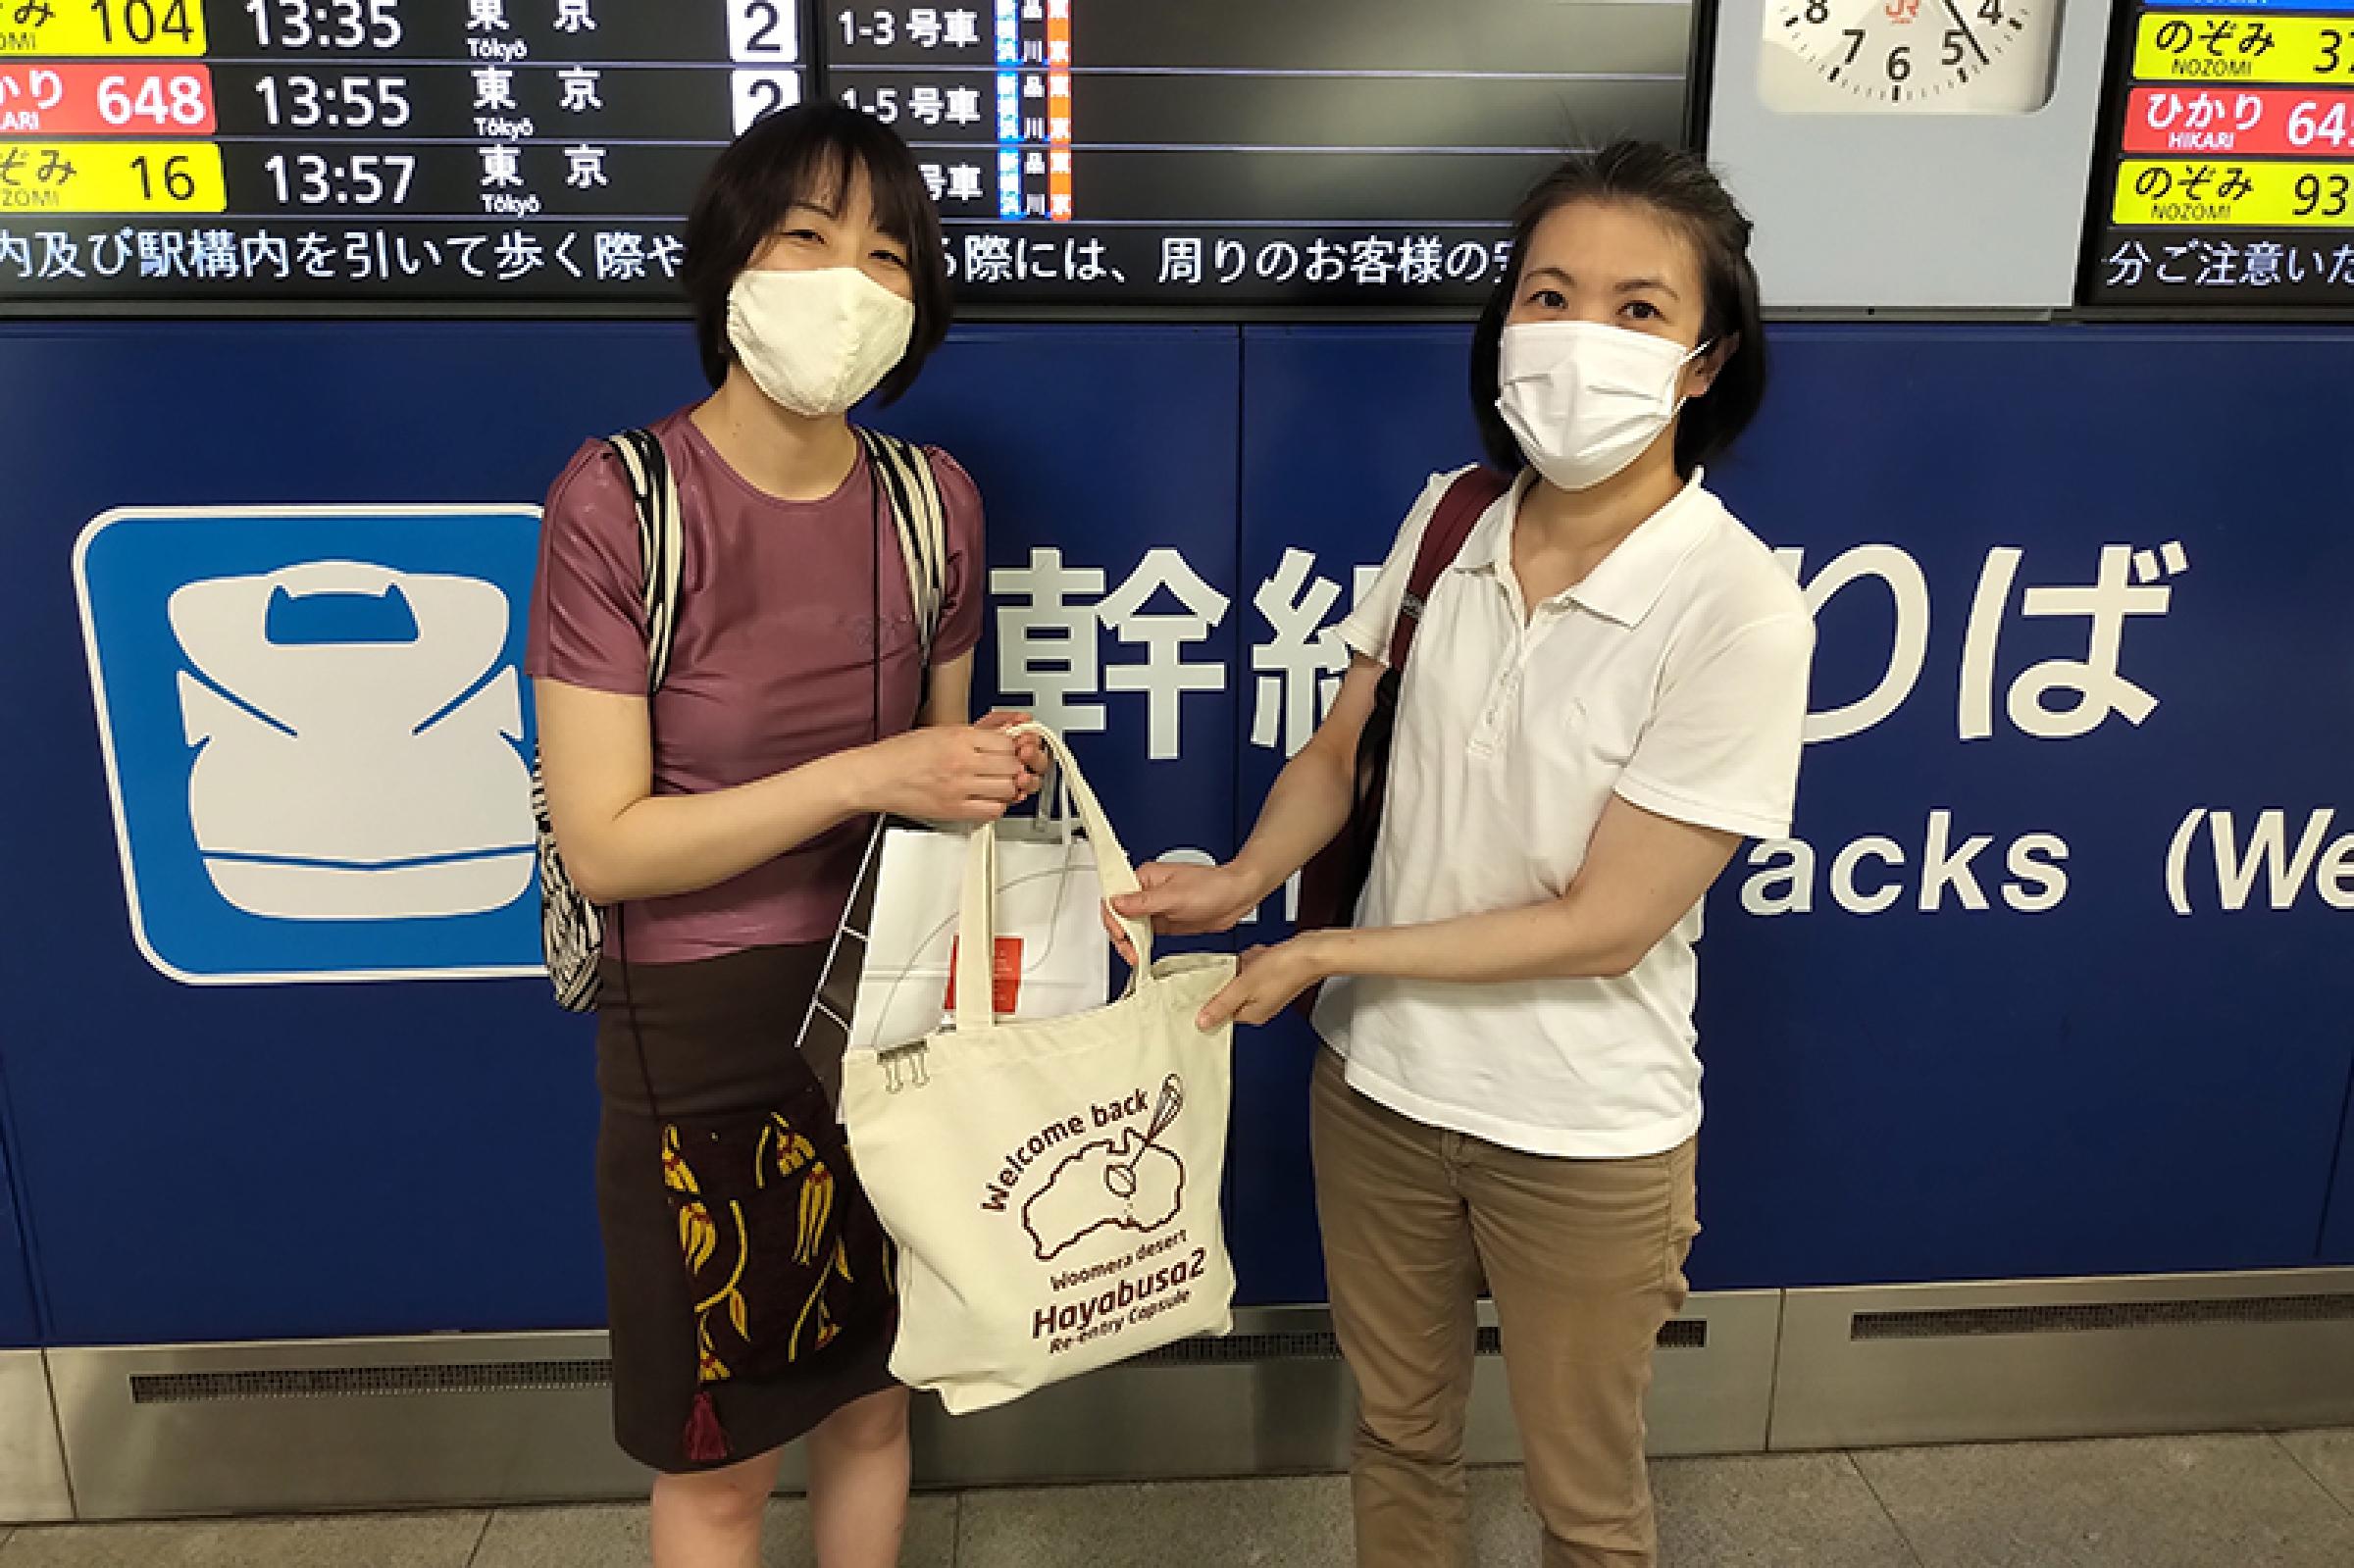 7月 11日に新横浜駅で薮田教授からリュウグウ粒子を受け取りました